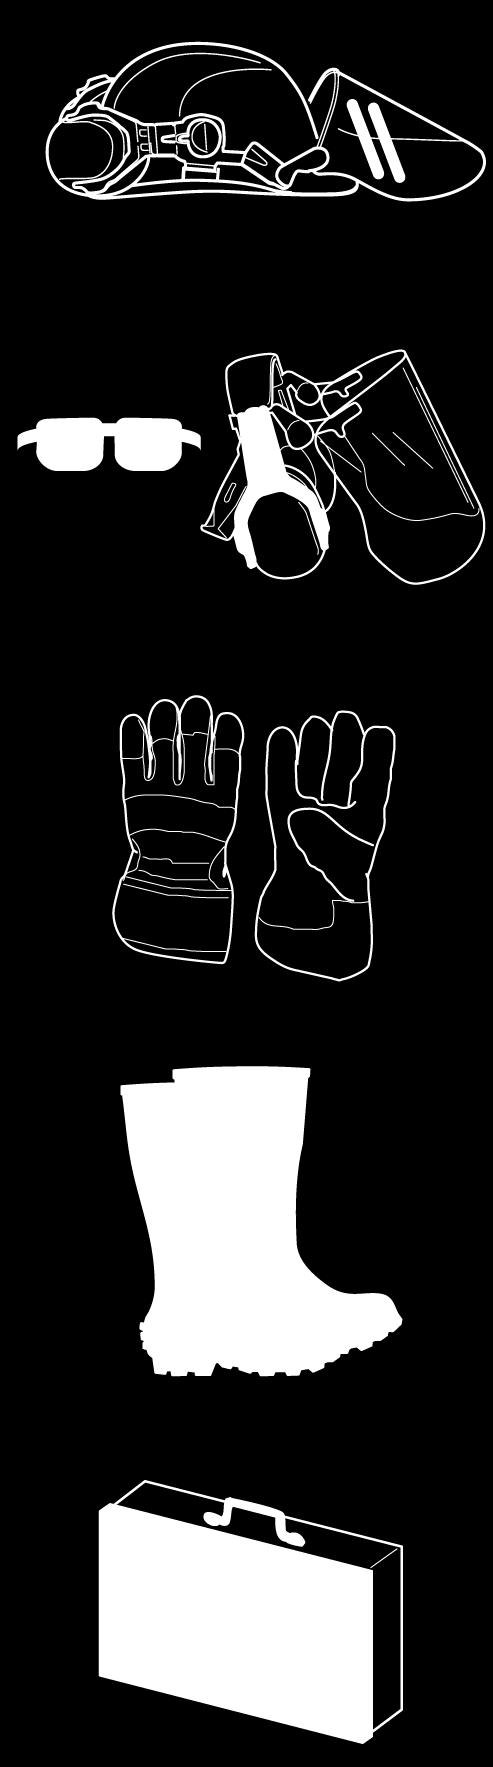 Obavezno koristite odgovarajuće zaštitne rukavice.